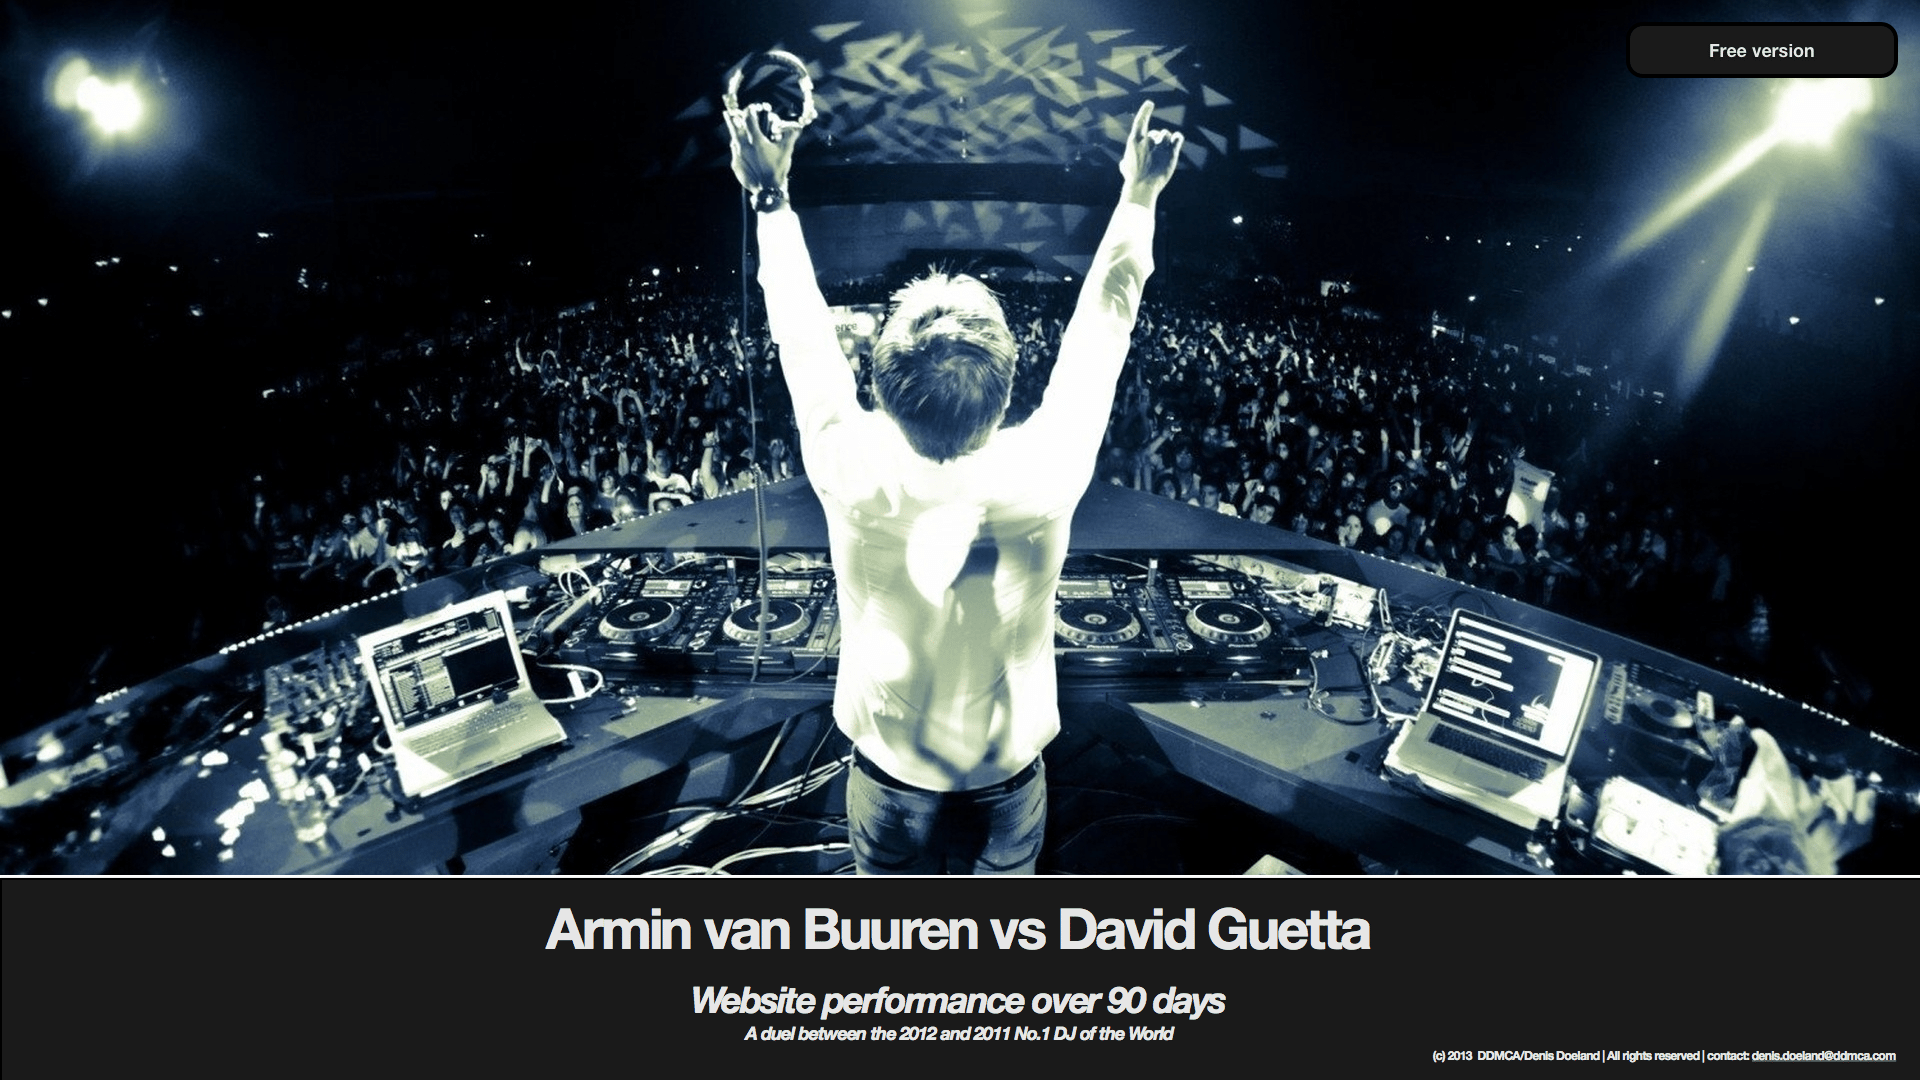 Achtergrond: Armin van Buuren verslaat David Guetta